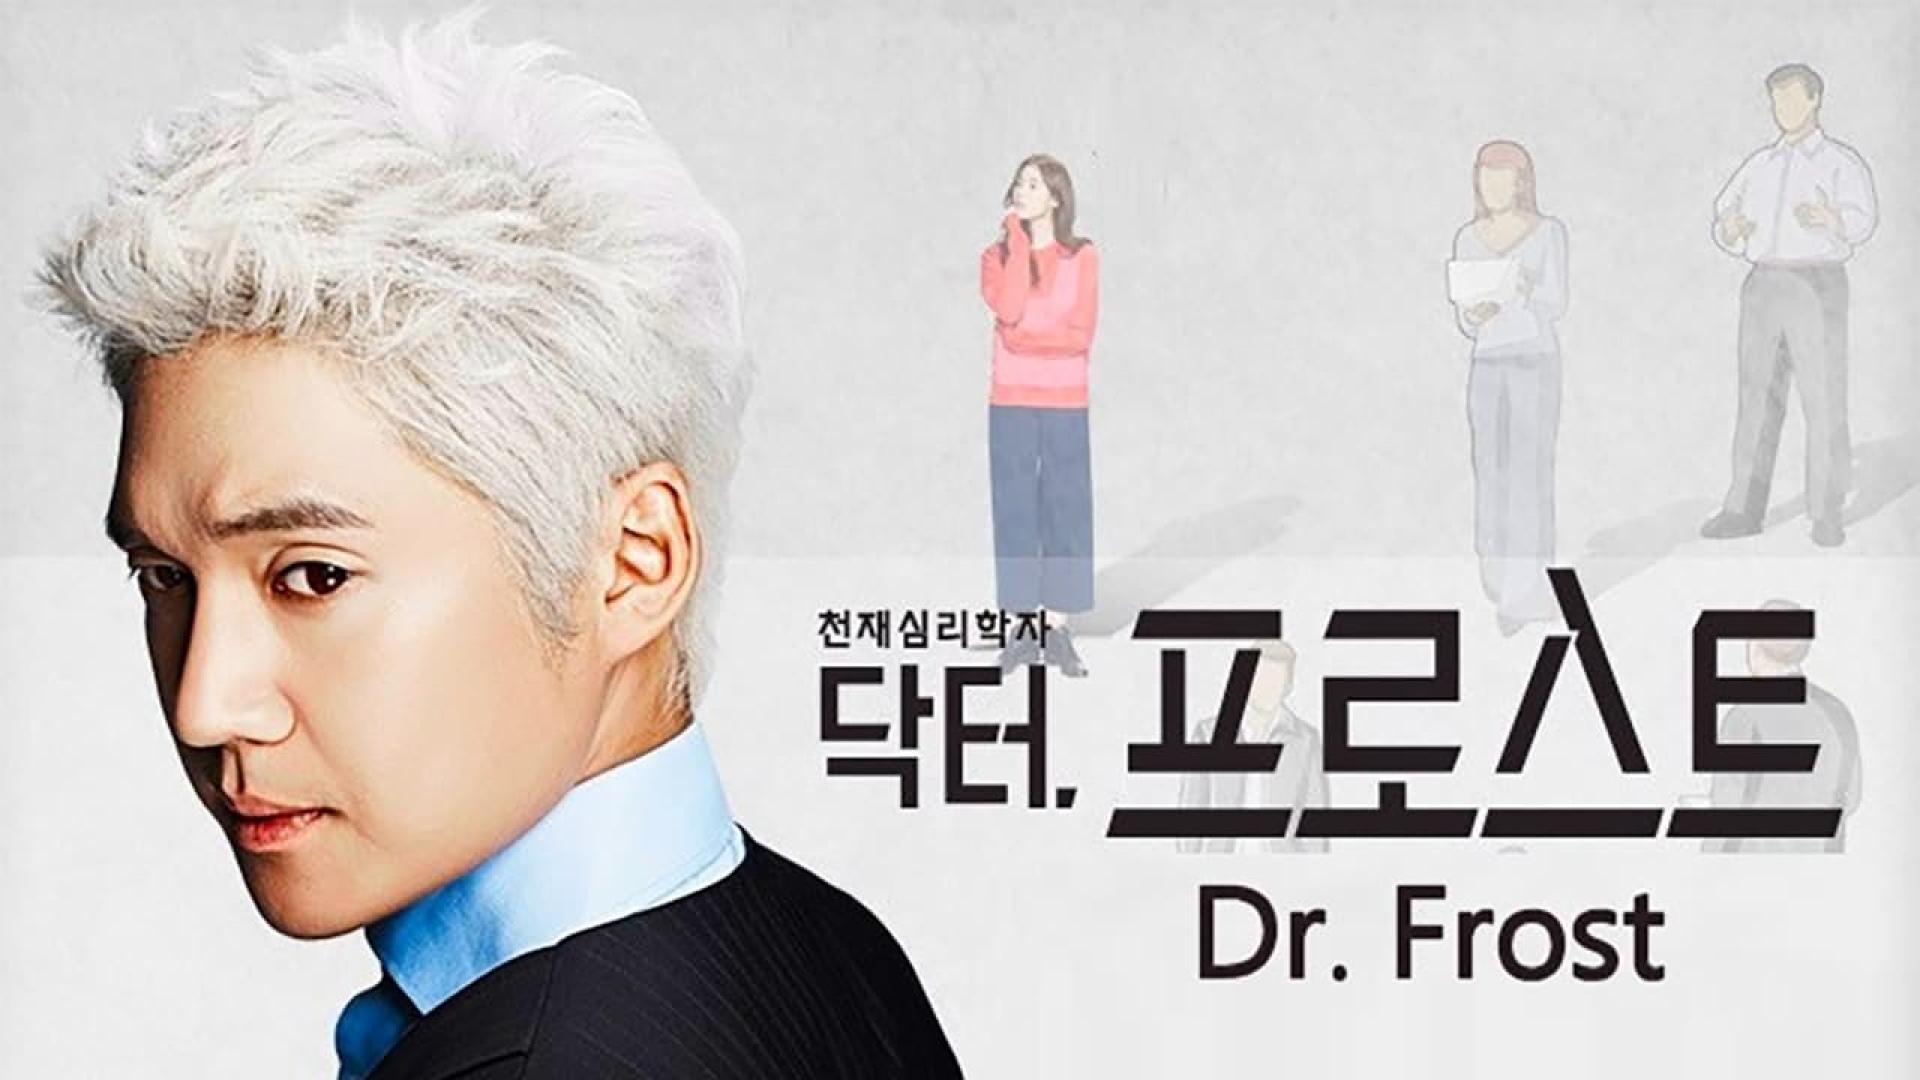 دانلود سریال کره ای Doctor Frost